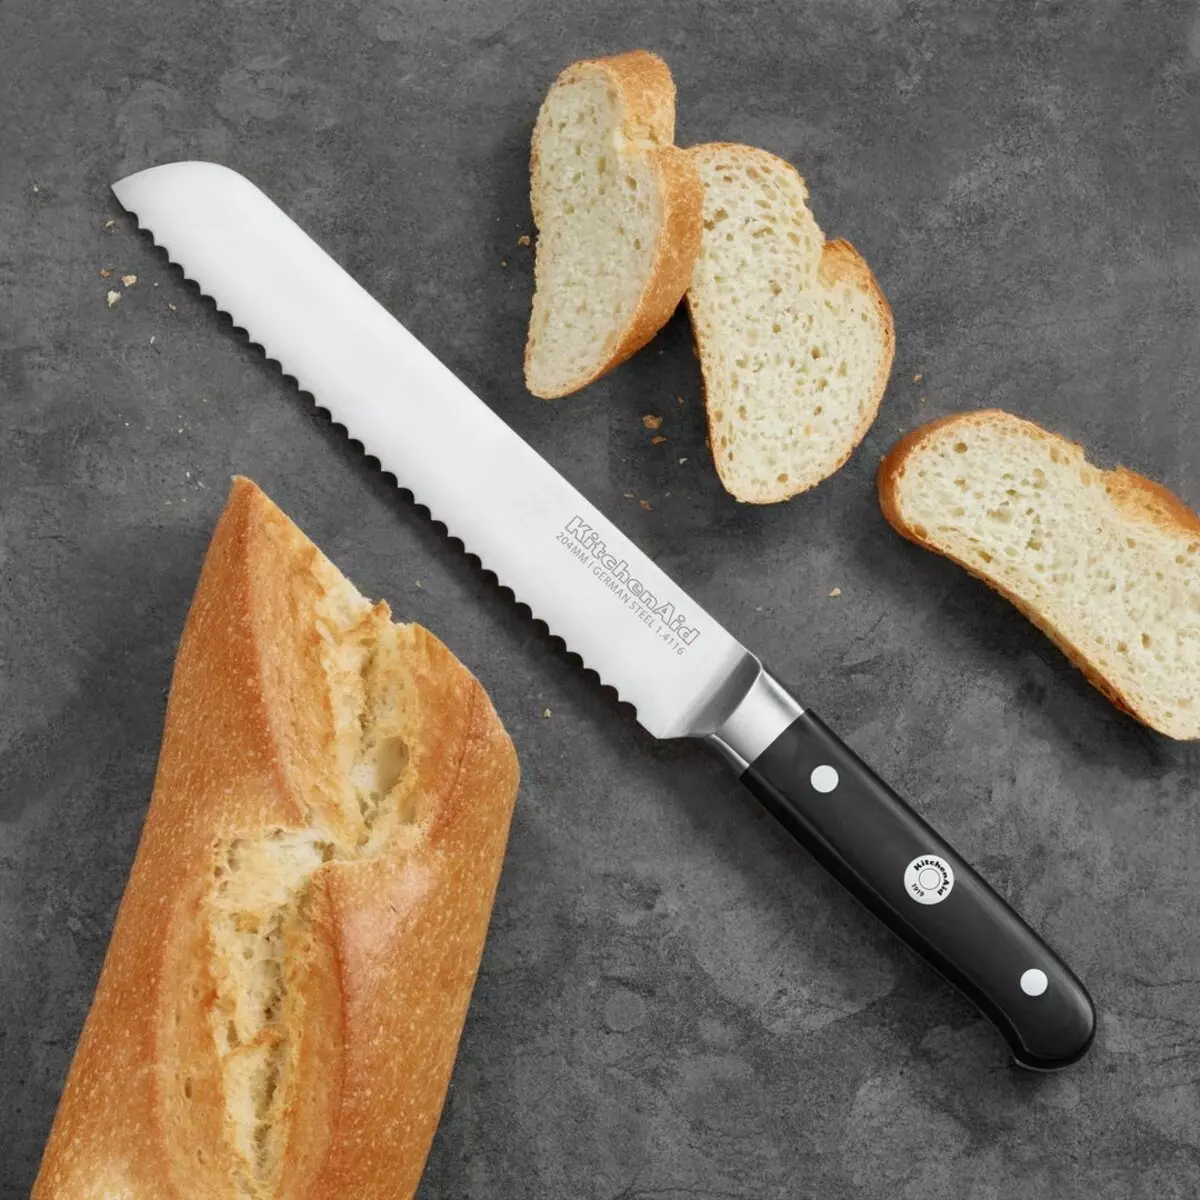 السكاكين من أجل الخبز (19 صور): ماذا المطبخ السكاكين bubber تبدو وكأنها قطع الخبز؟ كيفية اختيار الأفضل؟ 25945_15